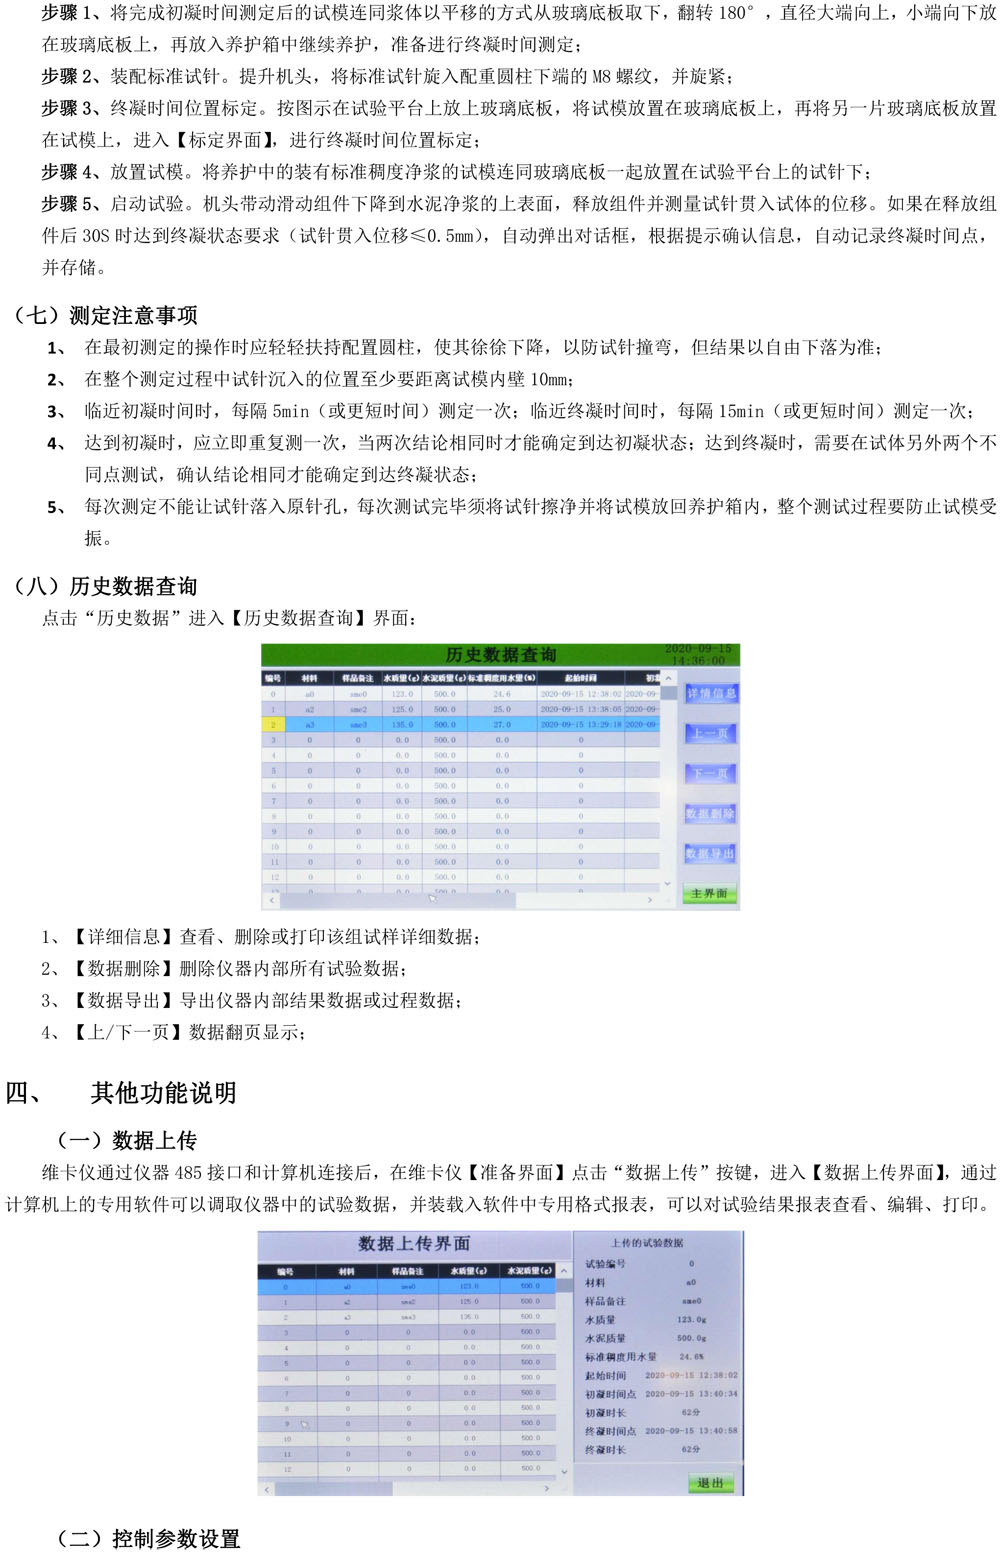 维卡仪PDF-5.jpg